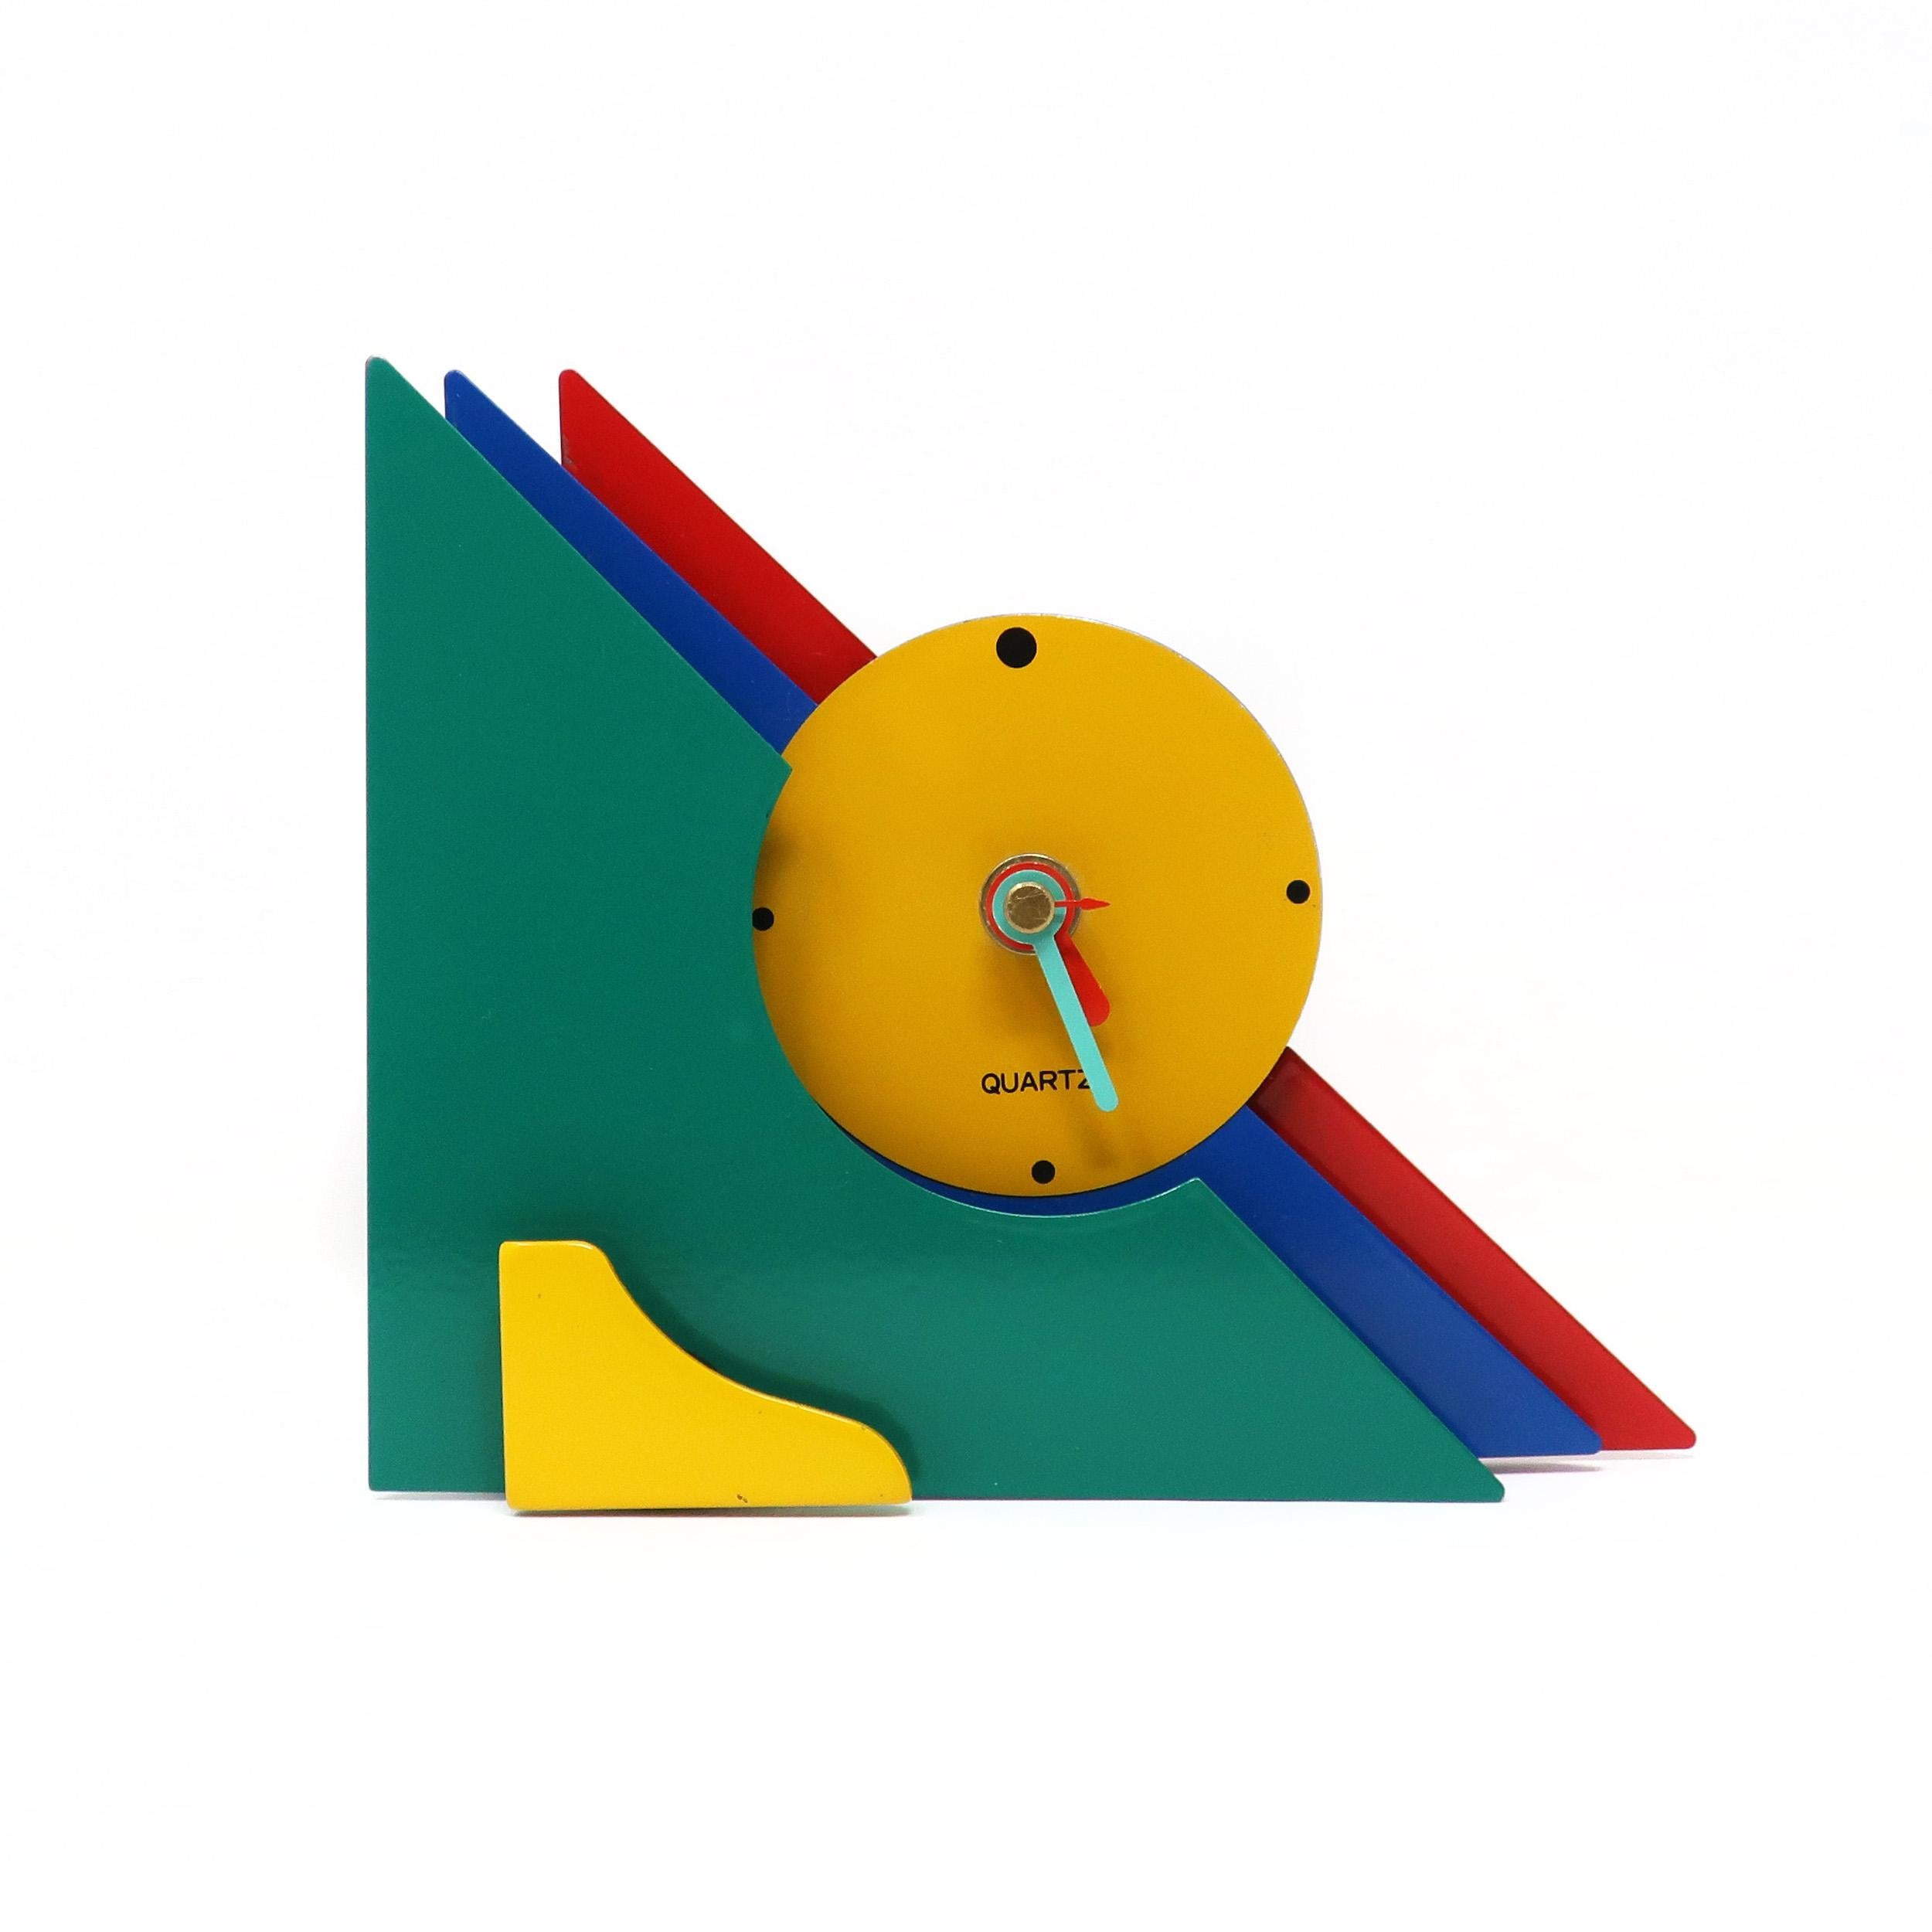 Avec une combinaison étonnante de métal émaillé rouge, bleu, vert et jaune, et des accents de lucite jaune, cette horloge postmoderne est conçue avec un design triangulaire empilé qui lui donne une rare et belle tridimensionnalité. Ses couleurs